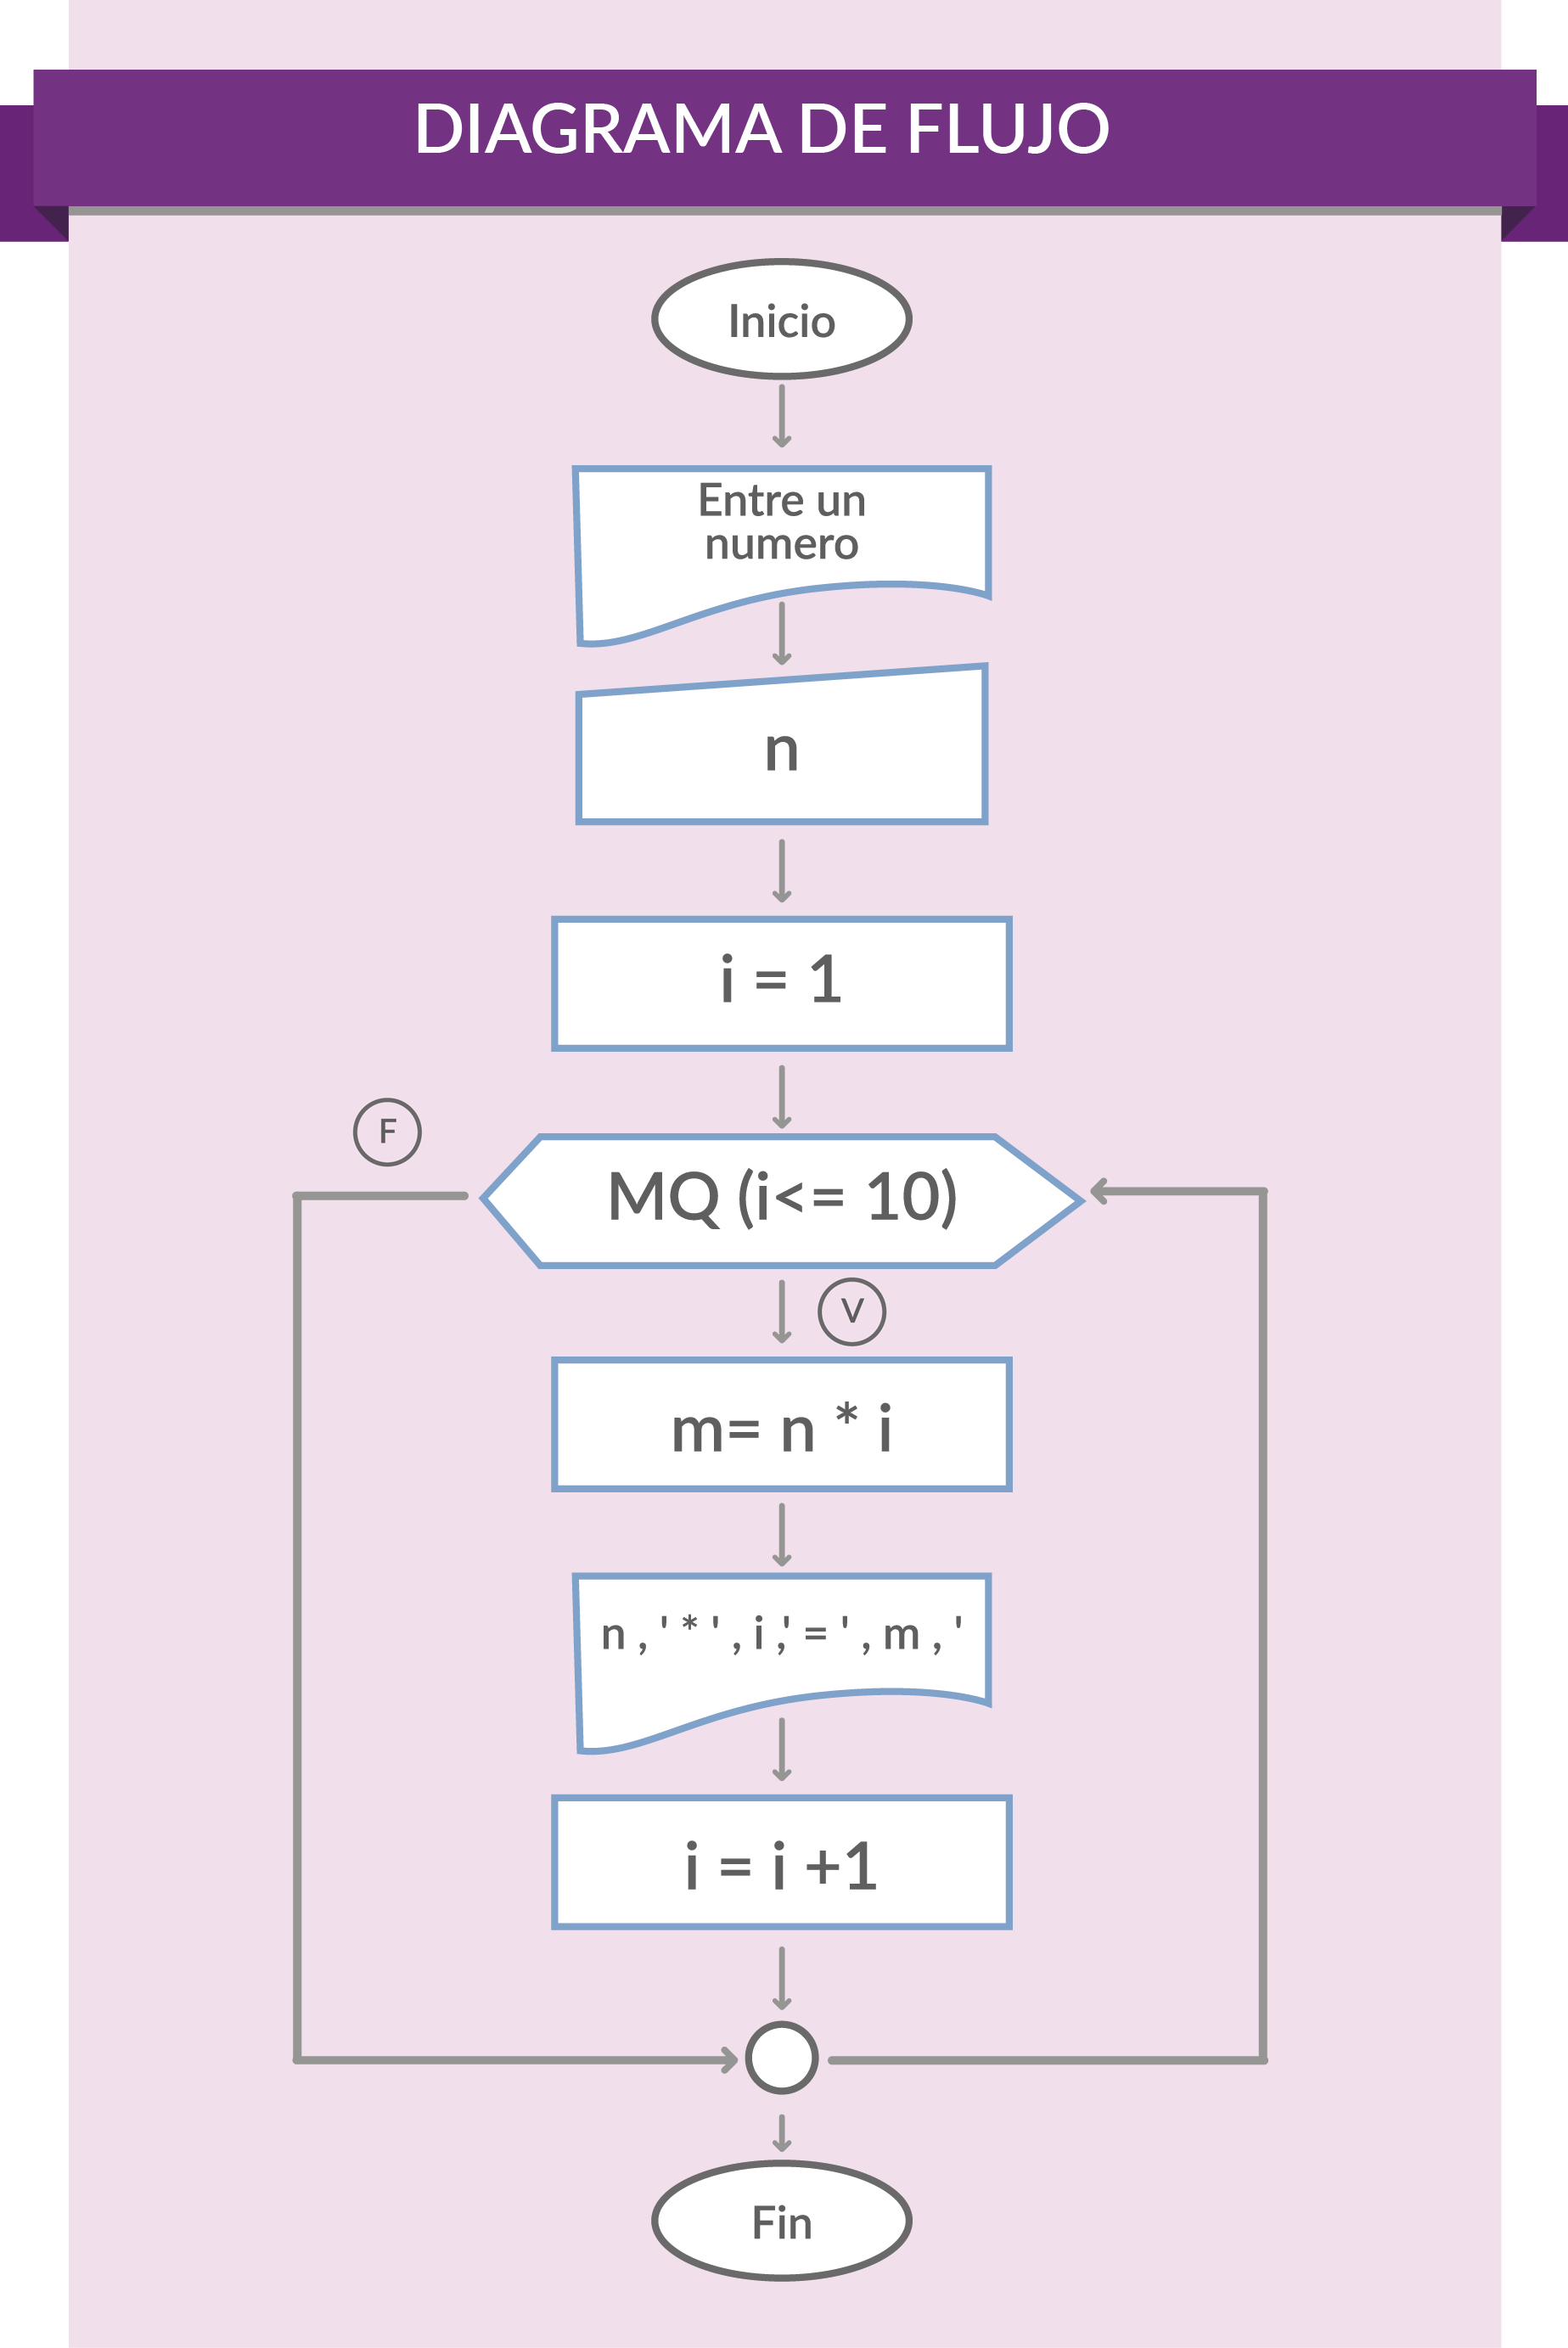 Algoritmo  que captura un número y realiza la tabla de multiplicar del uno al diez de dicho número